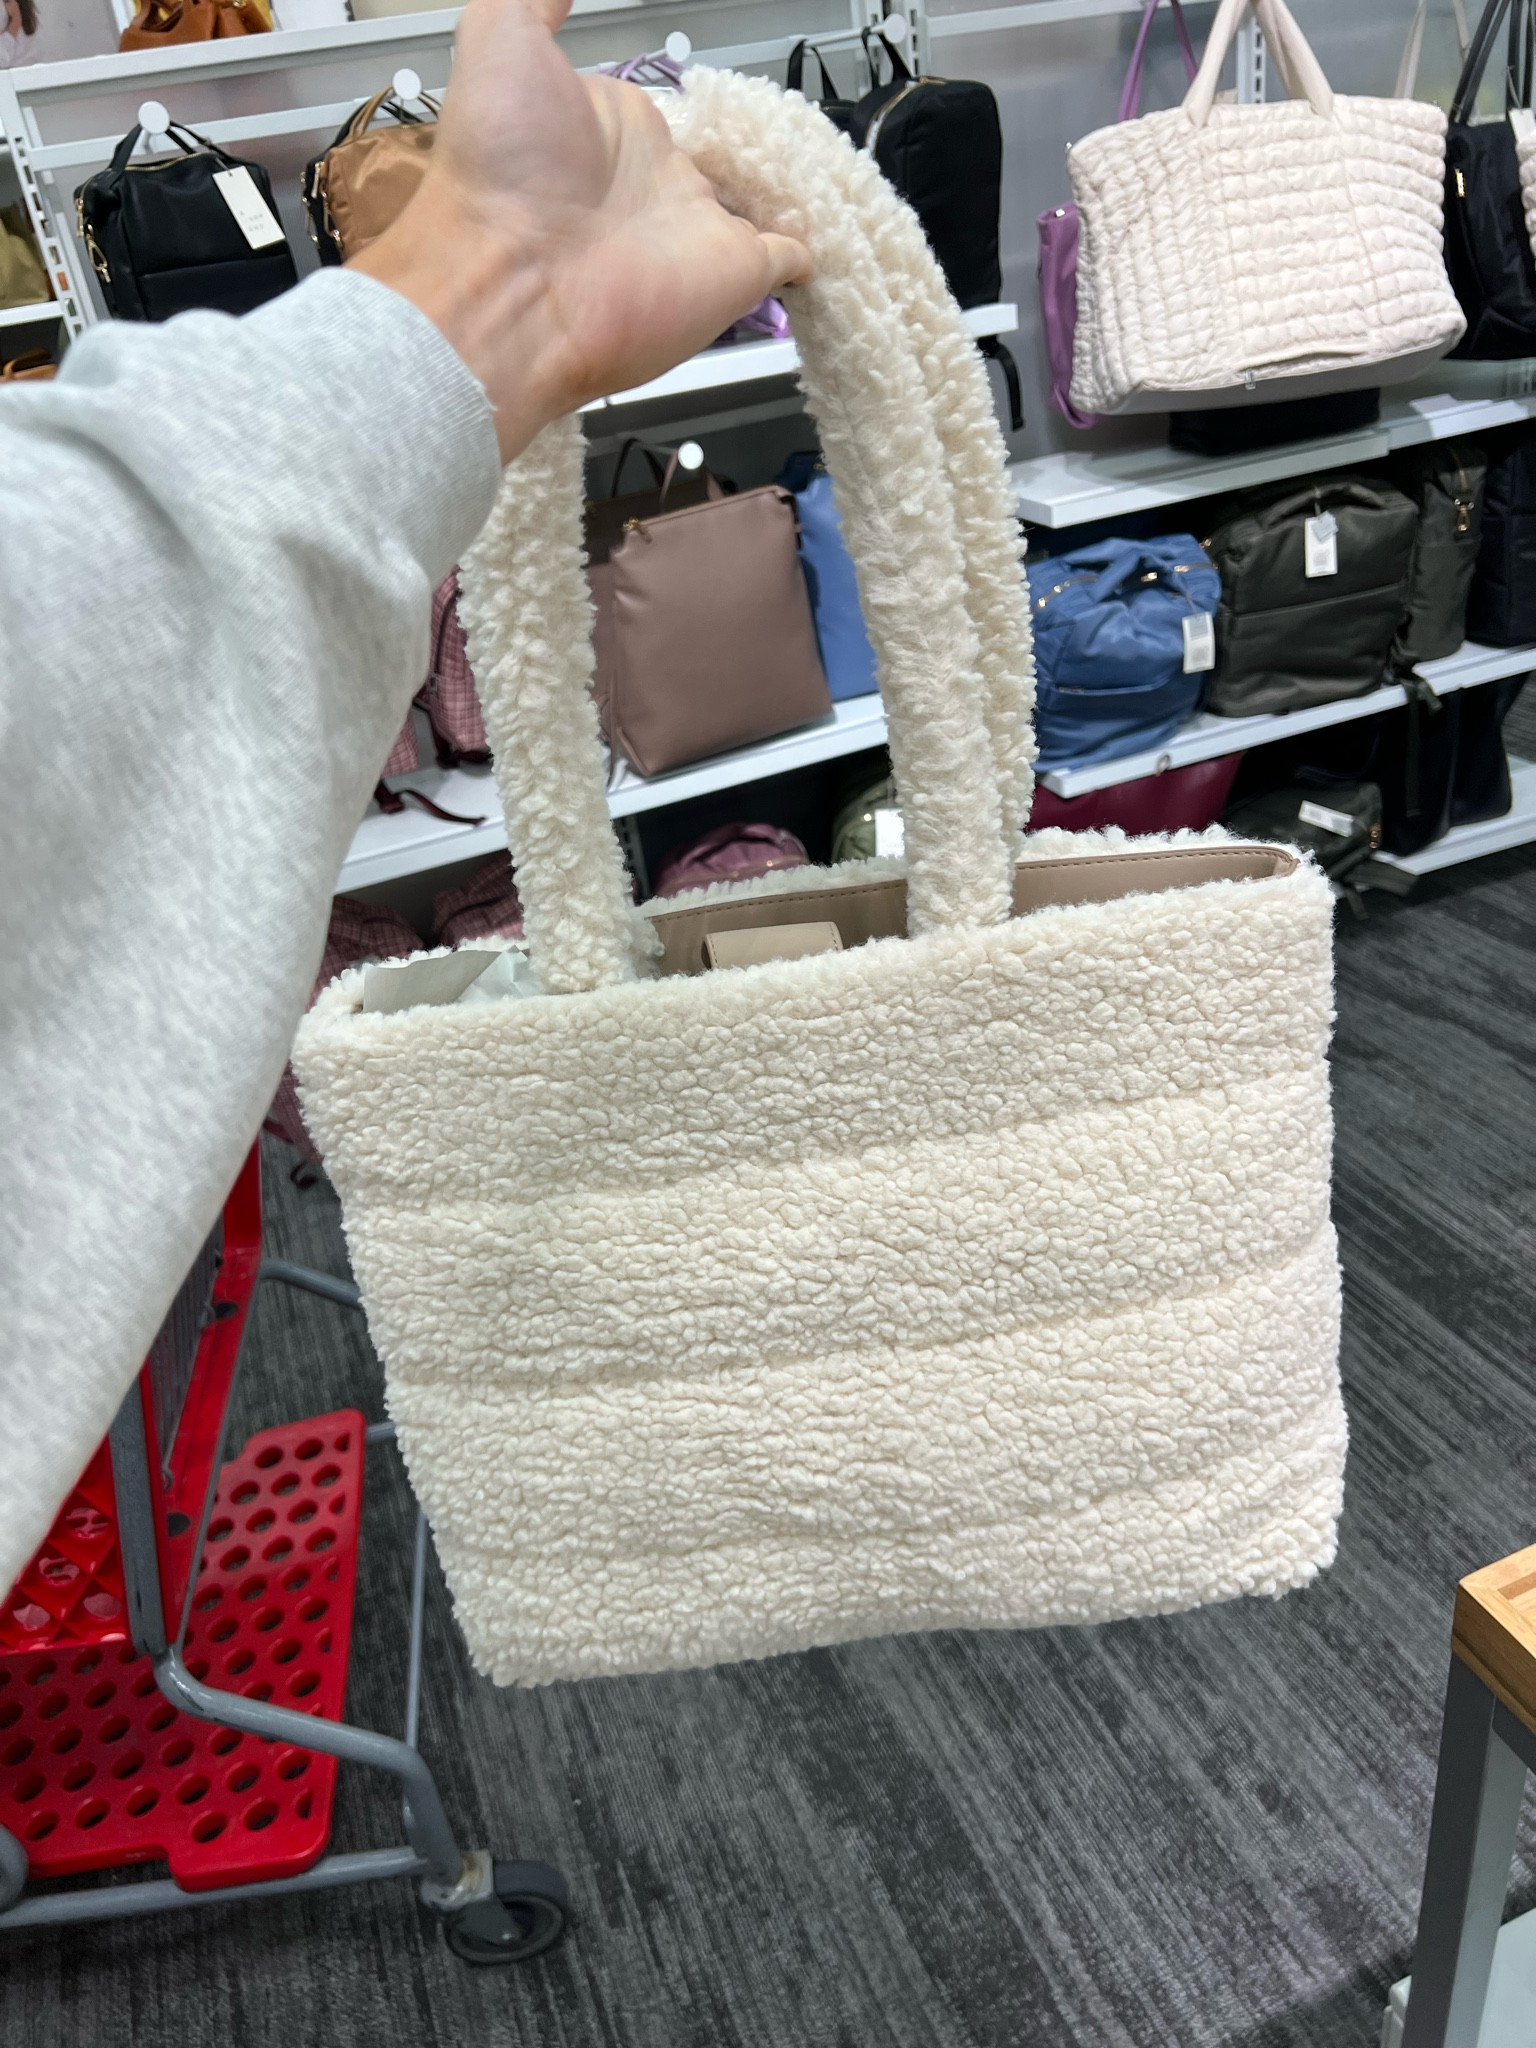 Handbag Tote Bag Designer Bag … curated on LTK